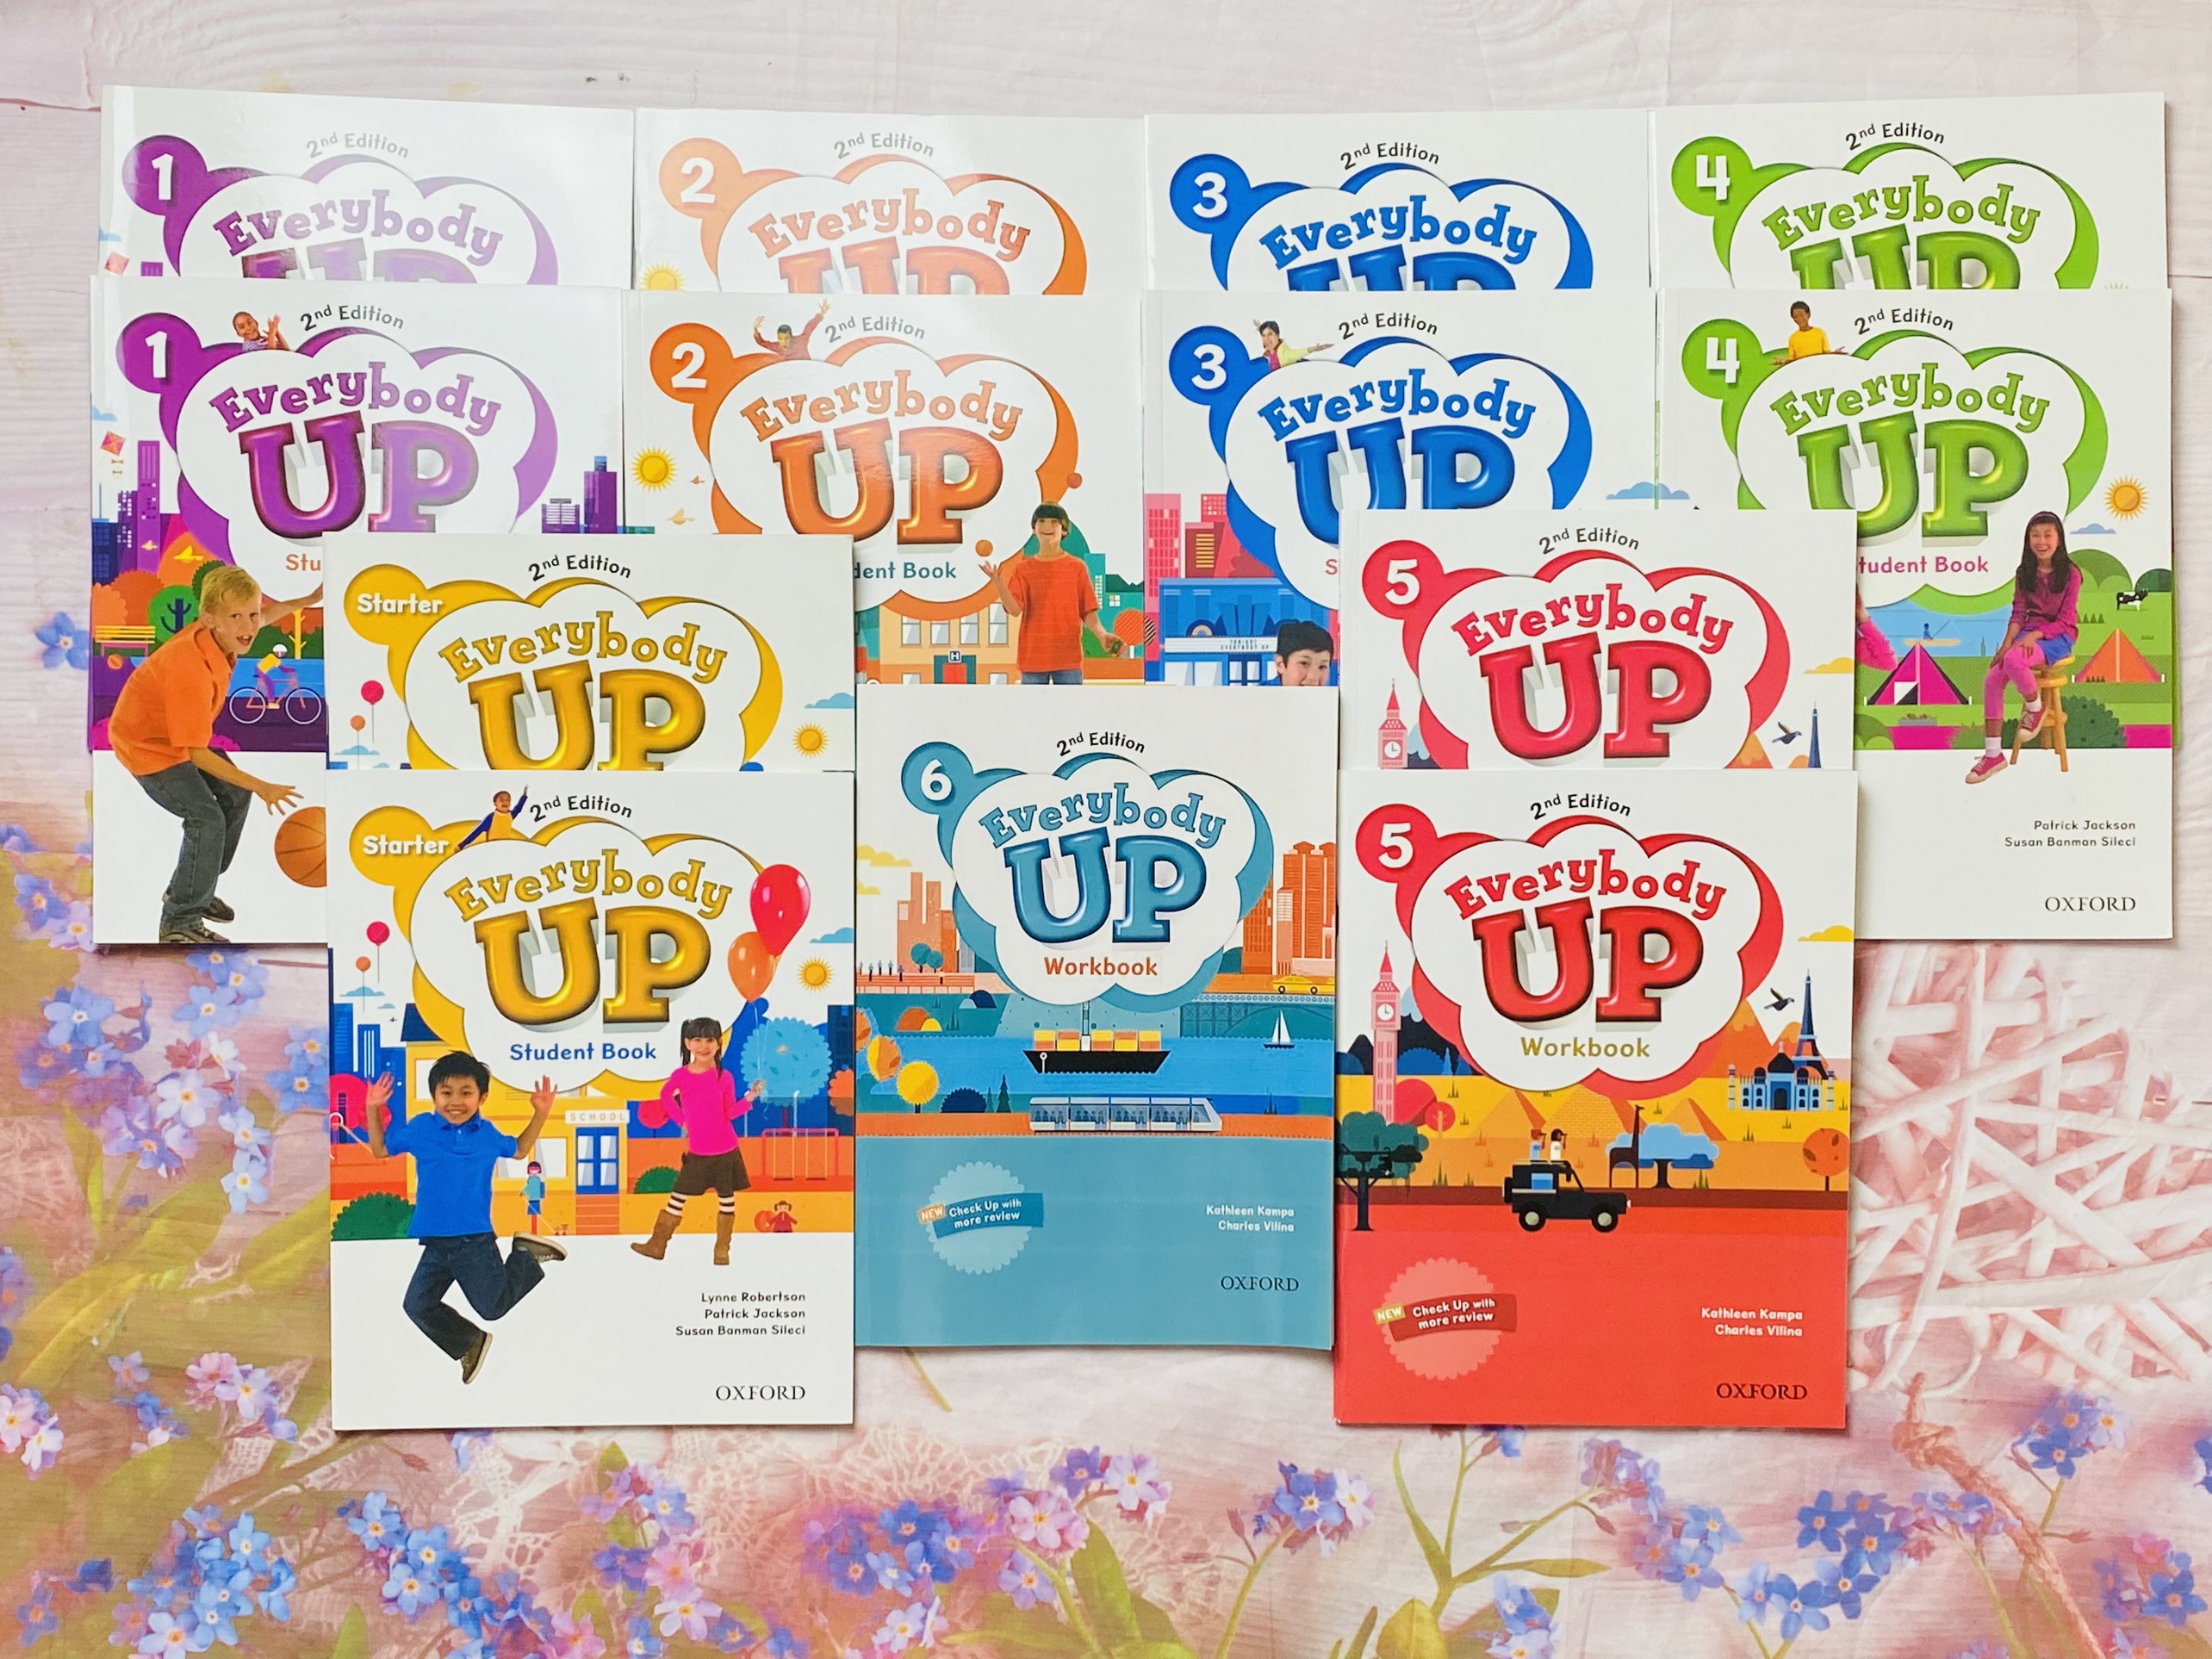 Sách Everybody Up (Level 1-5) là sách dạy tiếng Anh hướng tới trẻ em ở cấp Tiểu học